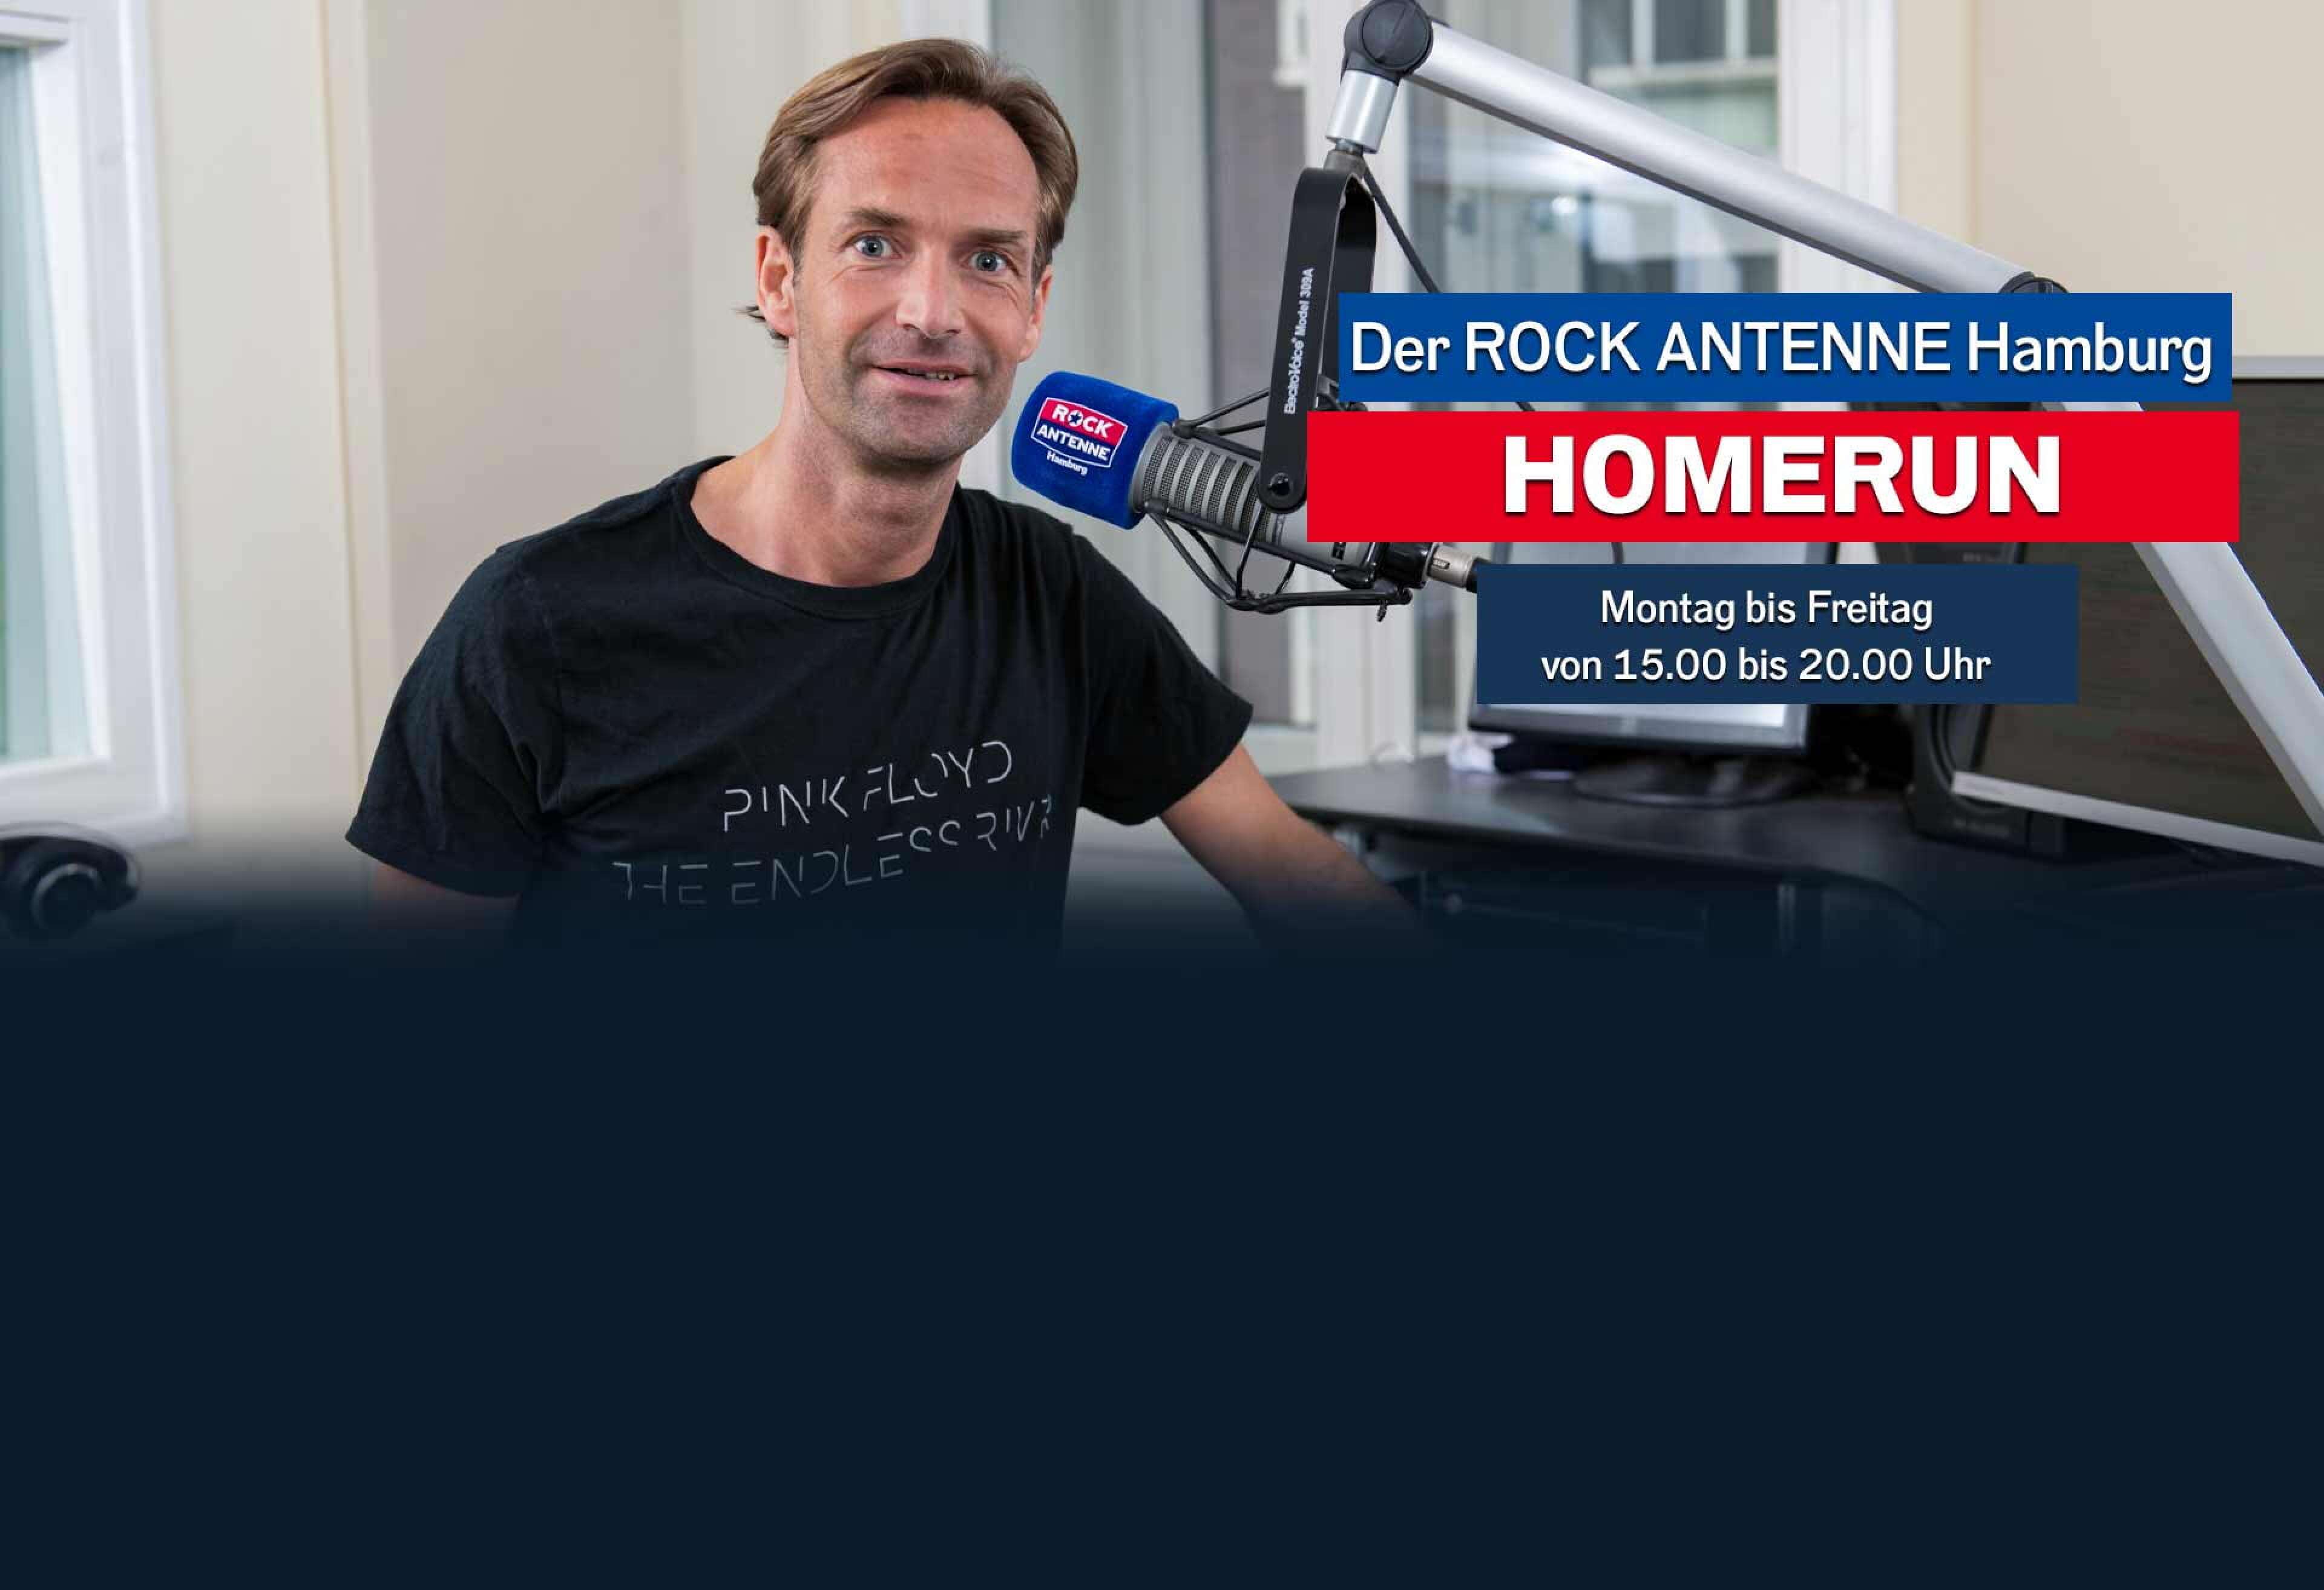 Bild von ROCK ANTENNE Hamburg Nachmittagsmoderator Lars Lorenz, Text: Der ROCK ANTENNE Hamburg Homerun, Montag bis Freitag 15 bis 20 Uhr